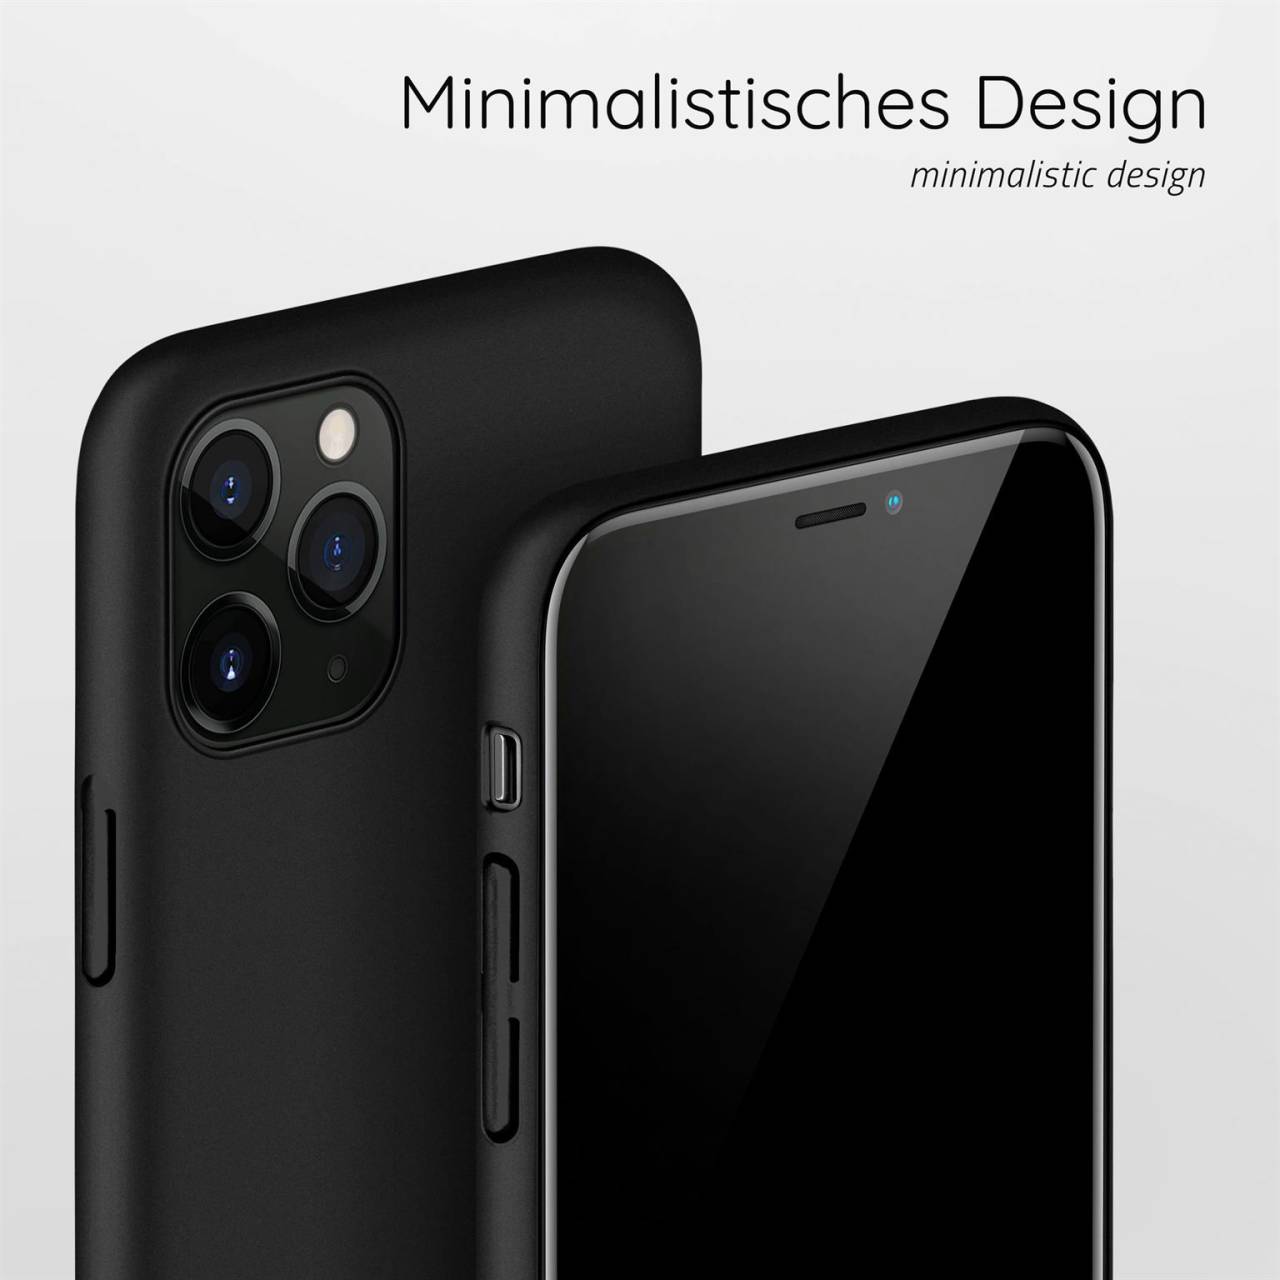 moex Alpha Case für Apple iPhone 11 Pro Max – Extrem dünne, minimalistische Hülle in seidenmatt